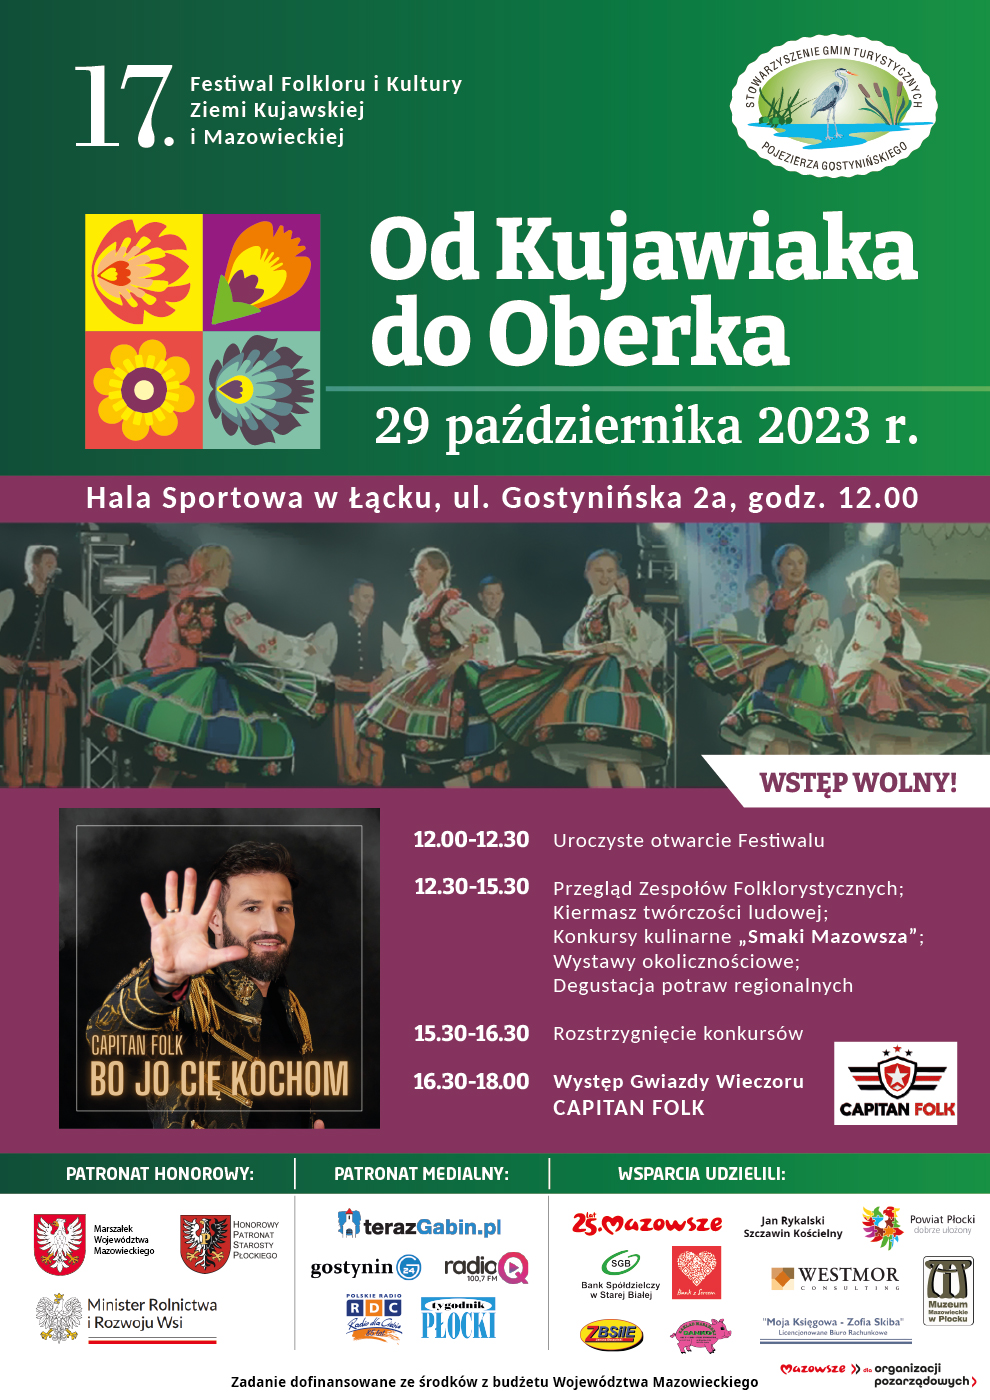 17. Festiwal Folkloru i Kultury Ziemi Kujawskiej "Od Kujawiaka do Oberka"